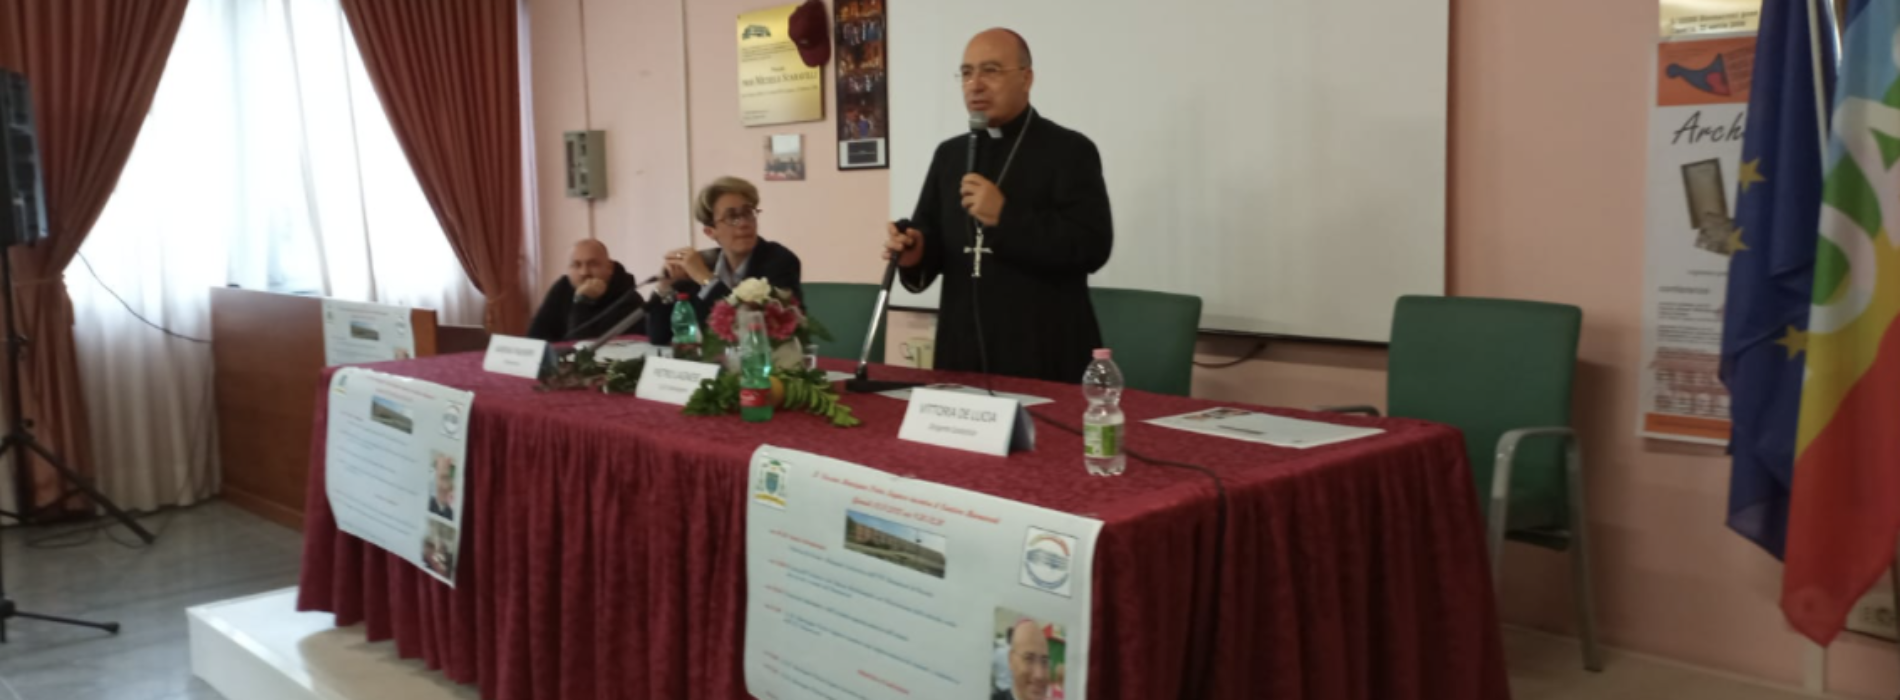 Istituto Buonarroti, il vescovo Pietro Lagnese entra in classe